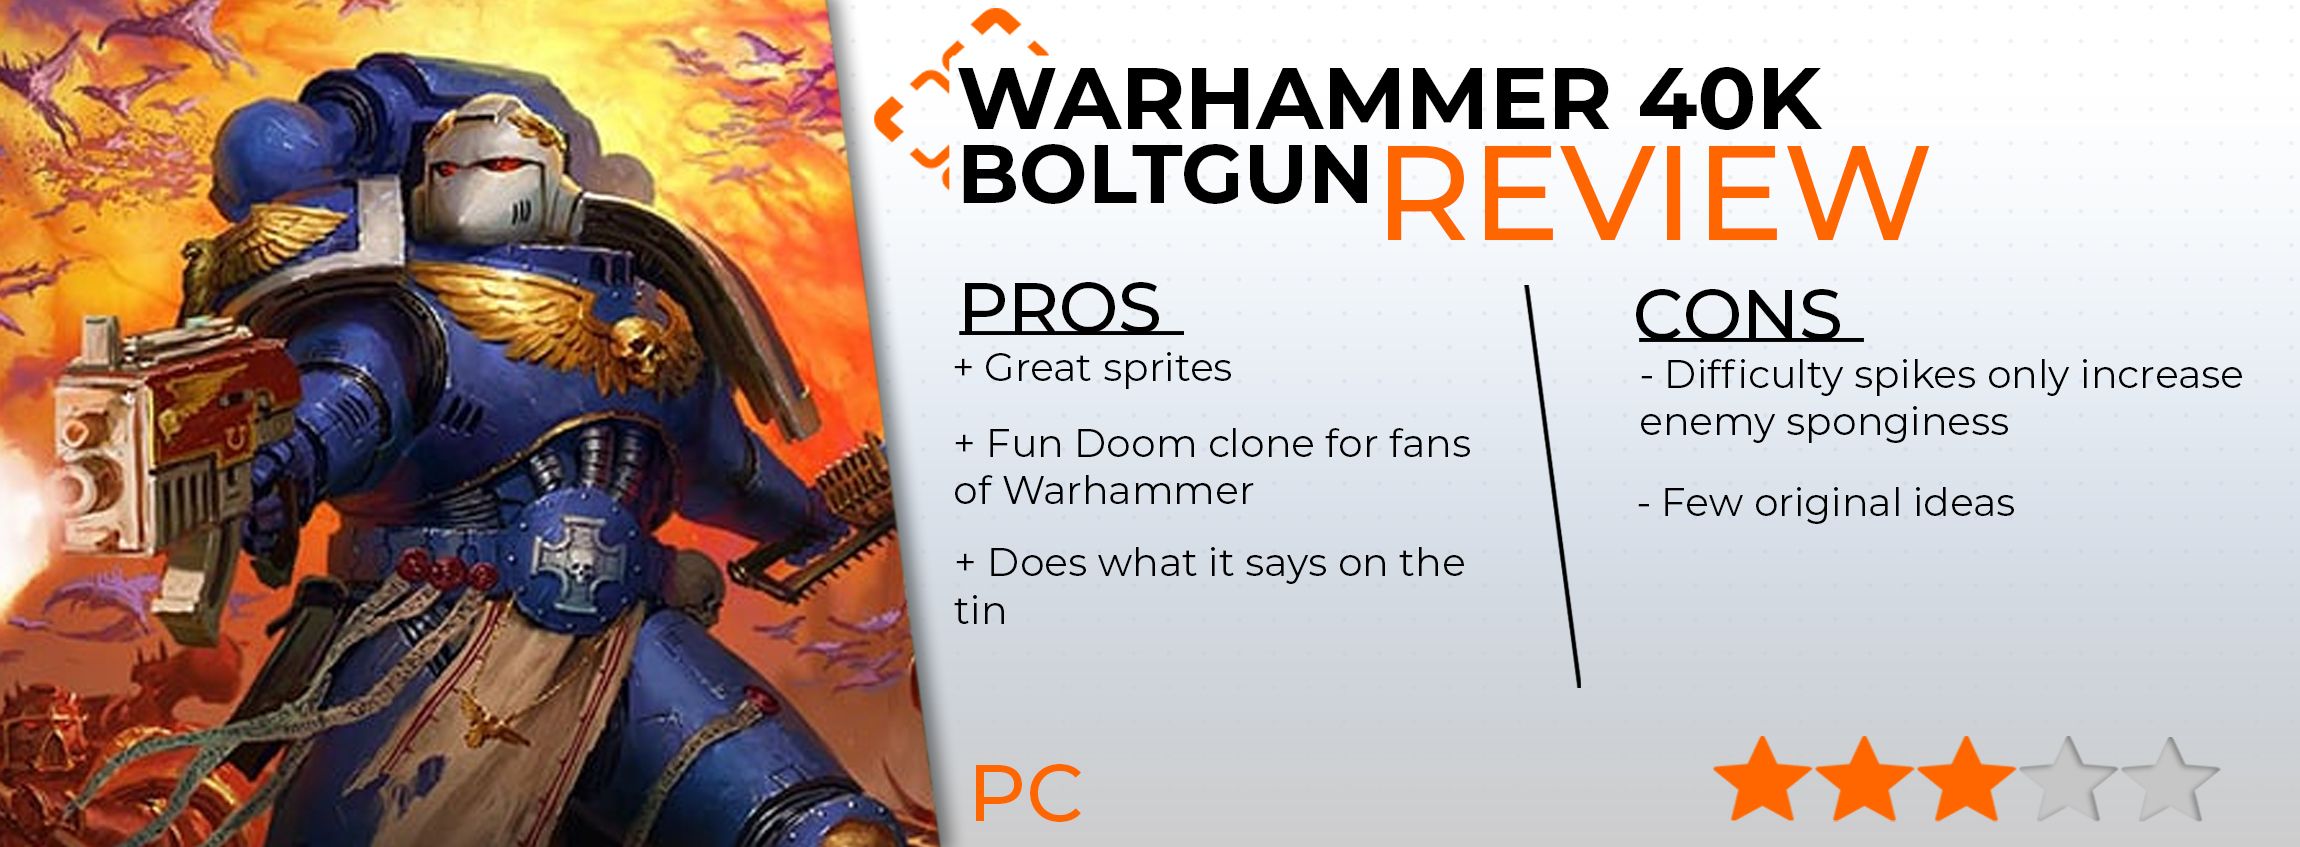 Warhammer 40k Boltgun review card